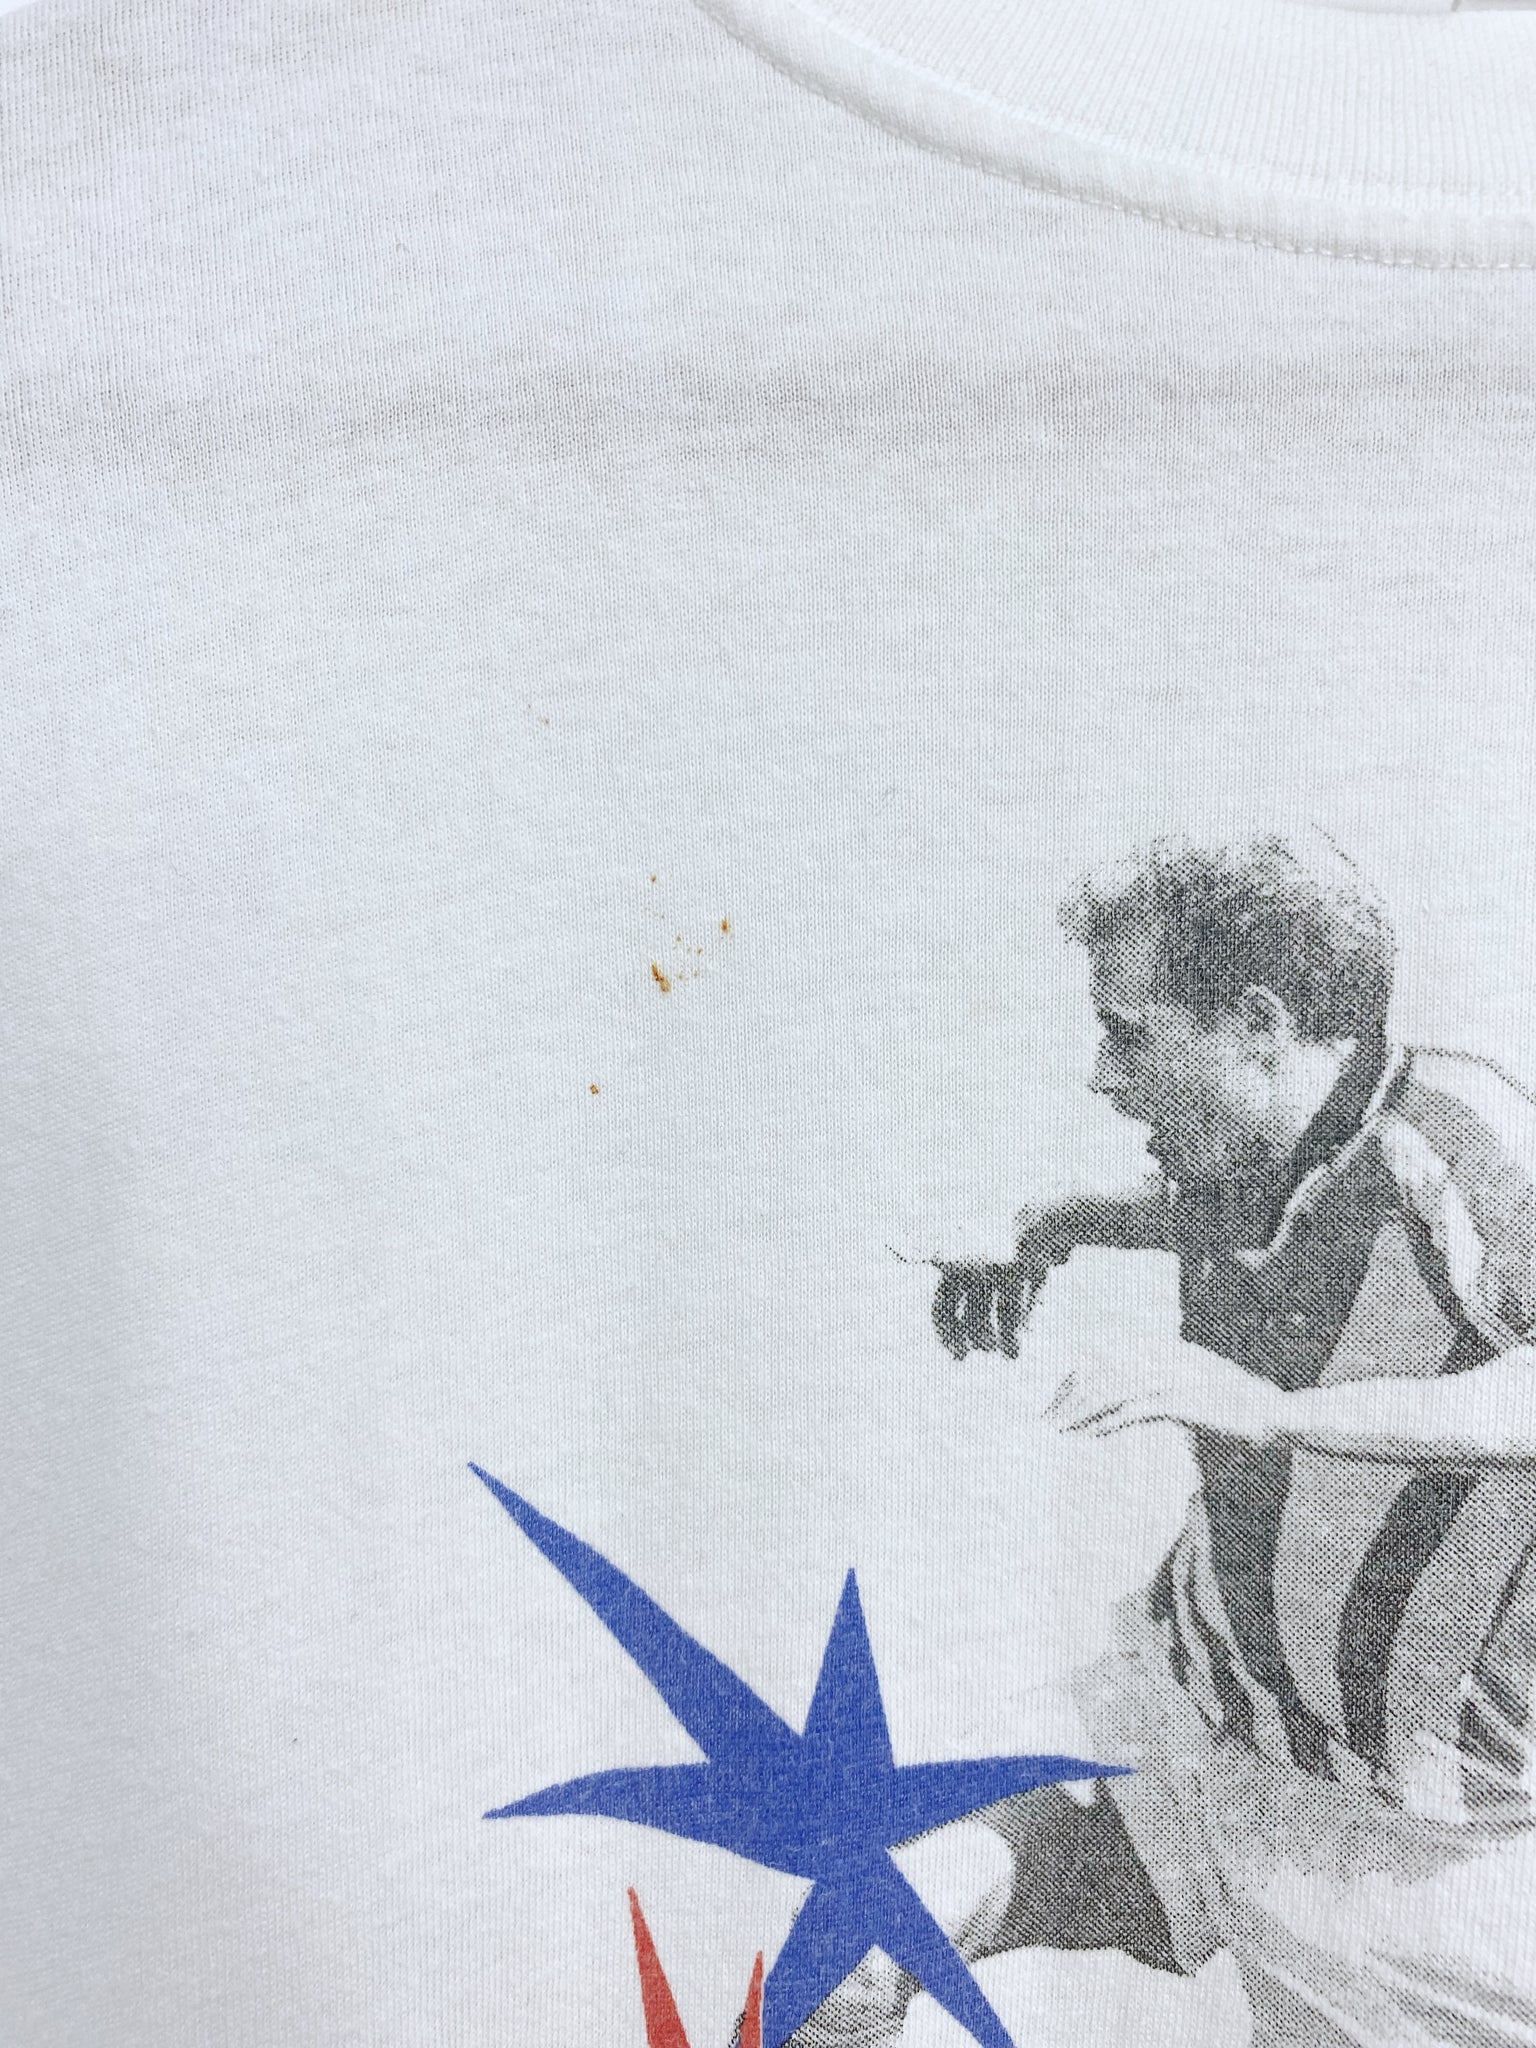 Vintage 1998 France Soccer T-shirt L